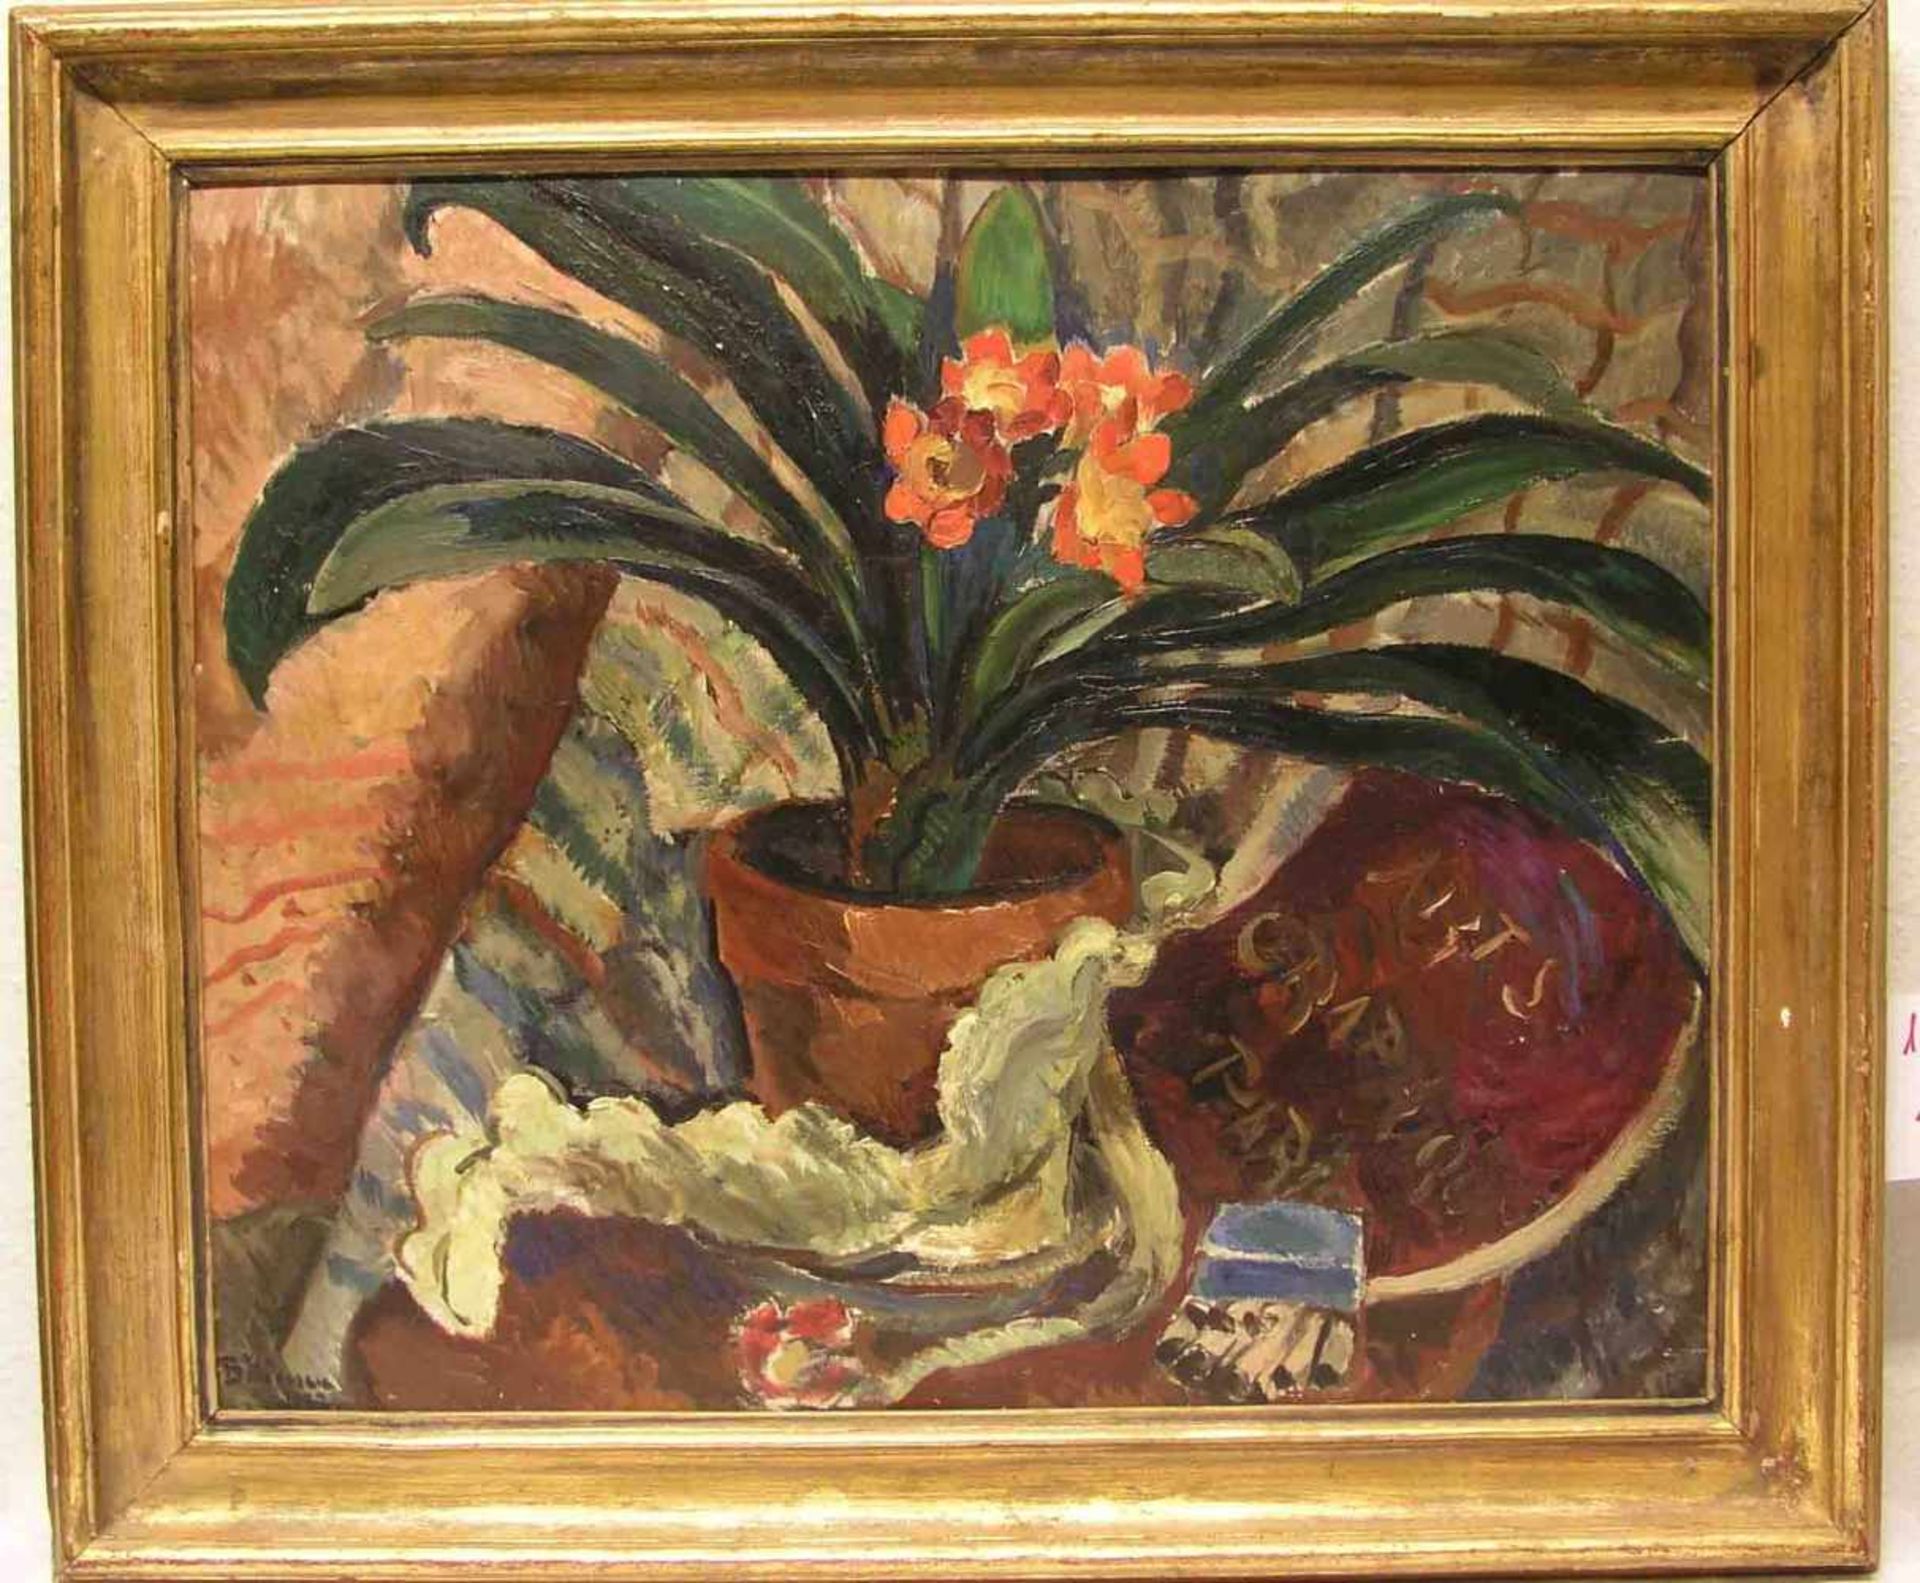 Bâlâcescu, Lucia (1895 - 1979), rumänische Malerin: "Stillleben mit Amaryllis".<br